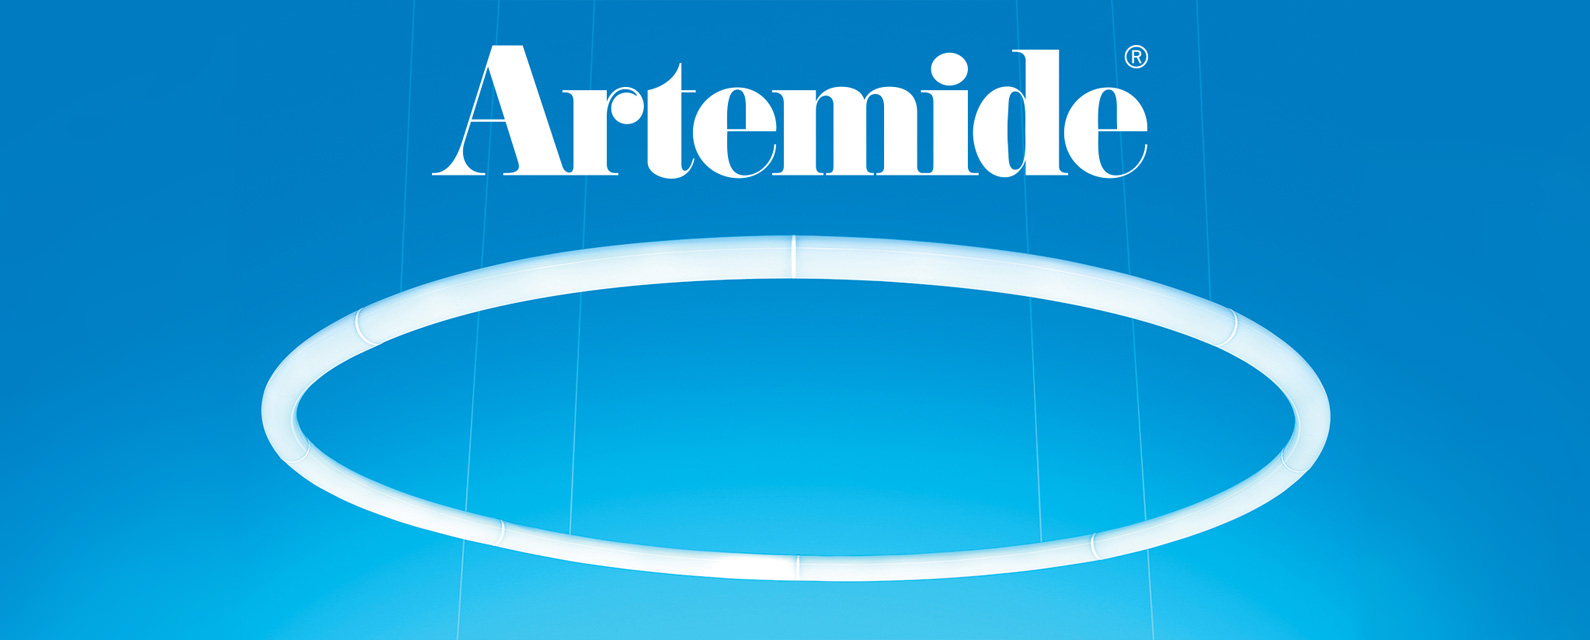 Icff-news-artemide